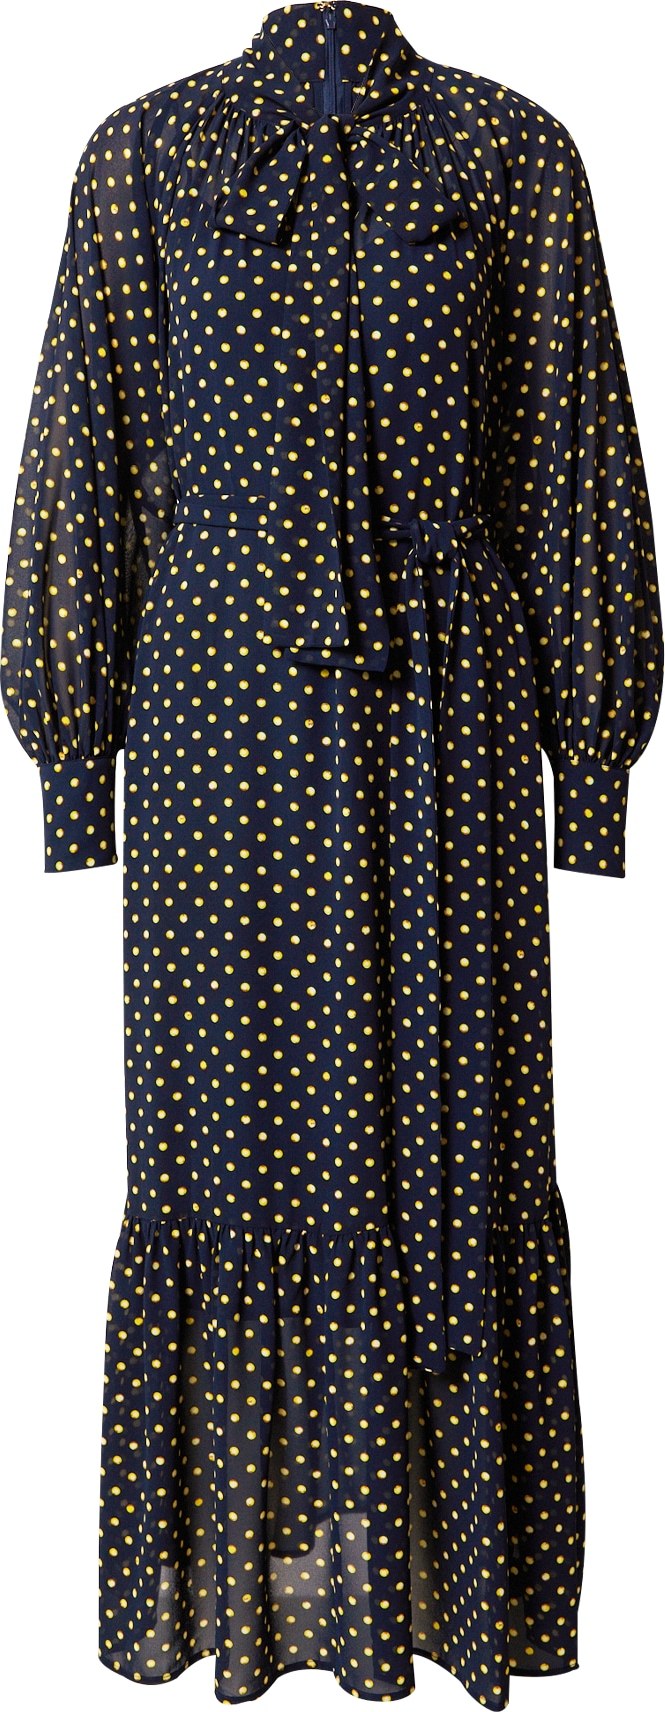 MICHAEL Michael Kors Košilové šaty 'ASTOR' tmavě modrá / limone